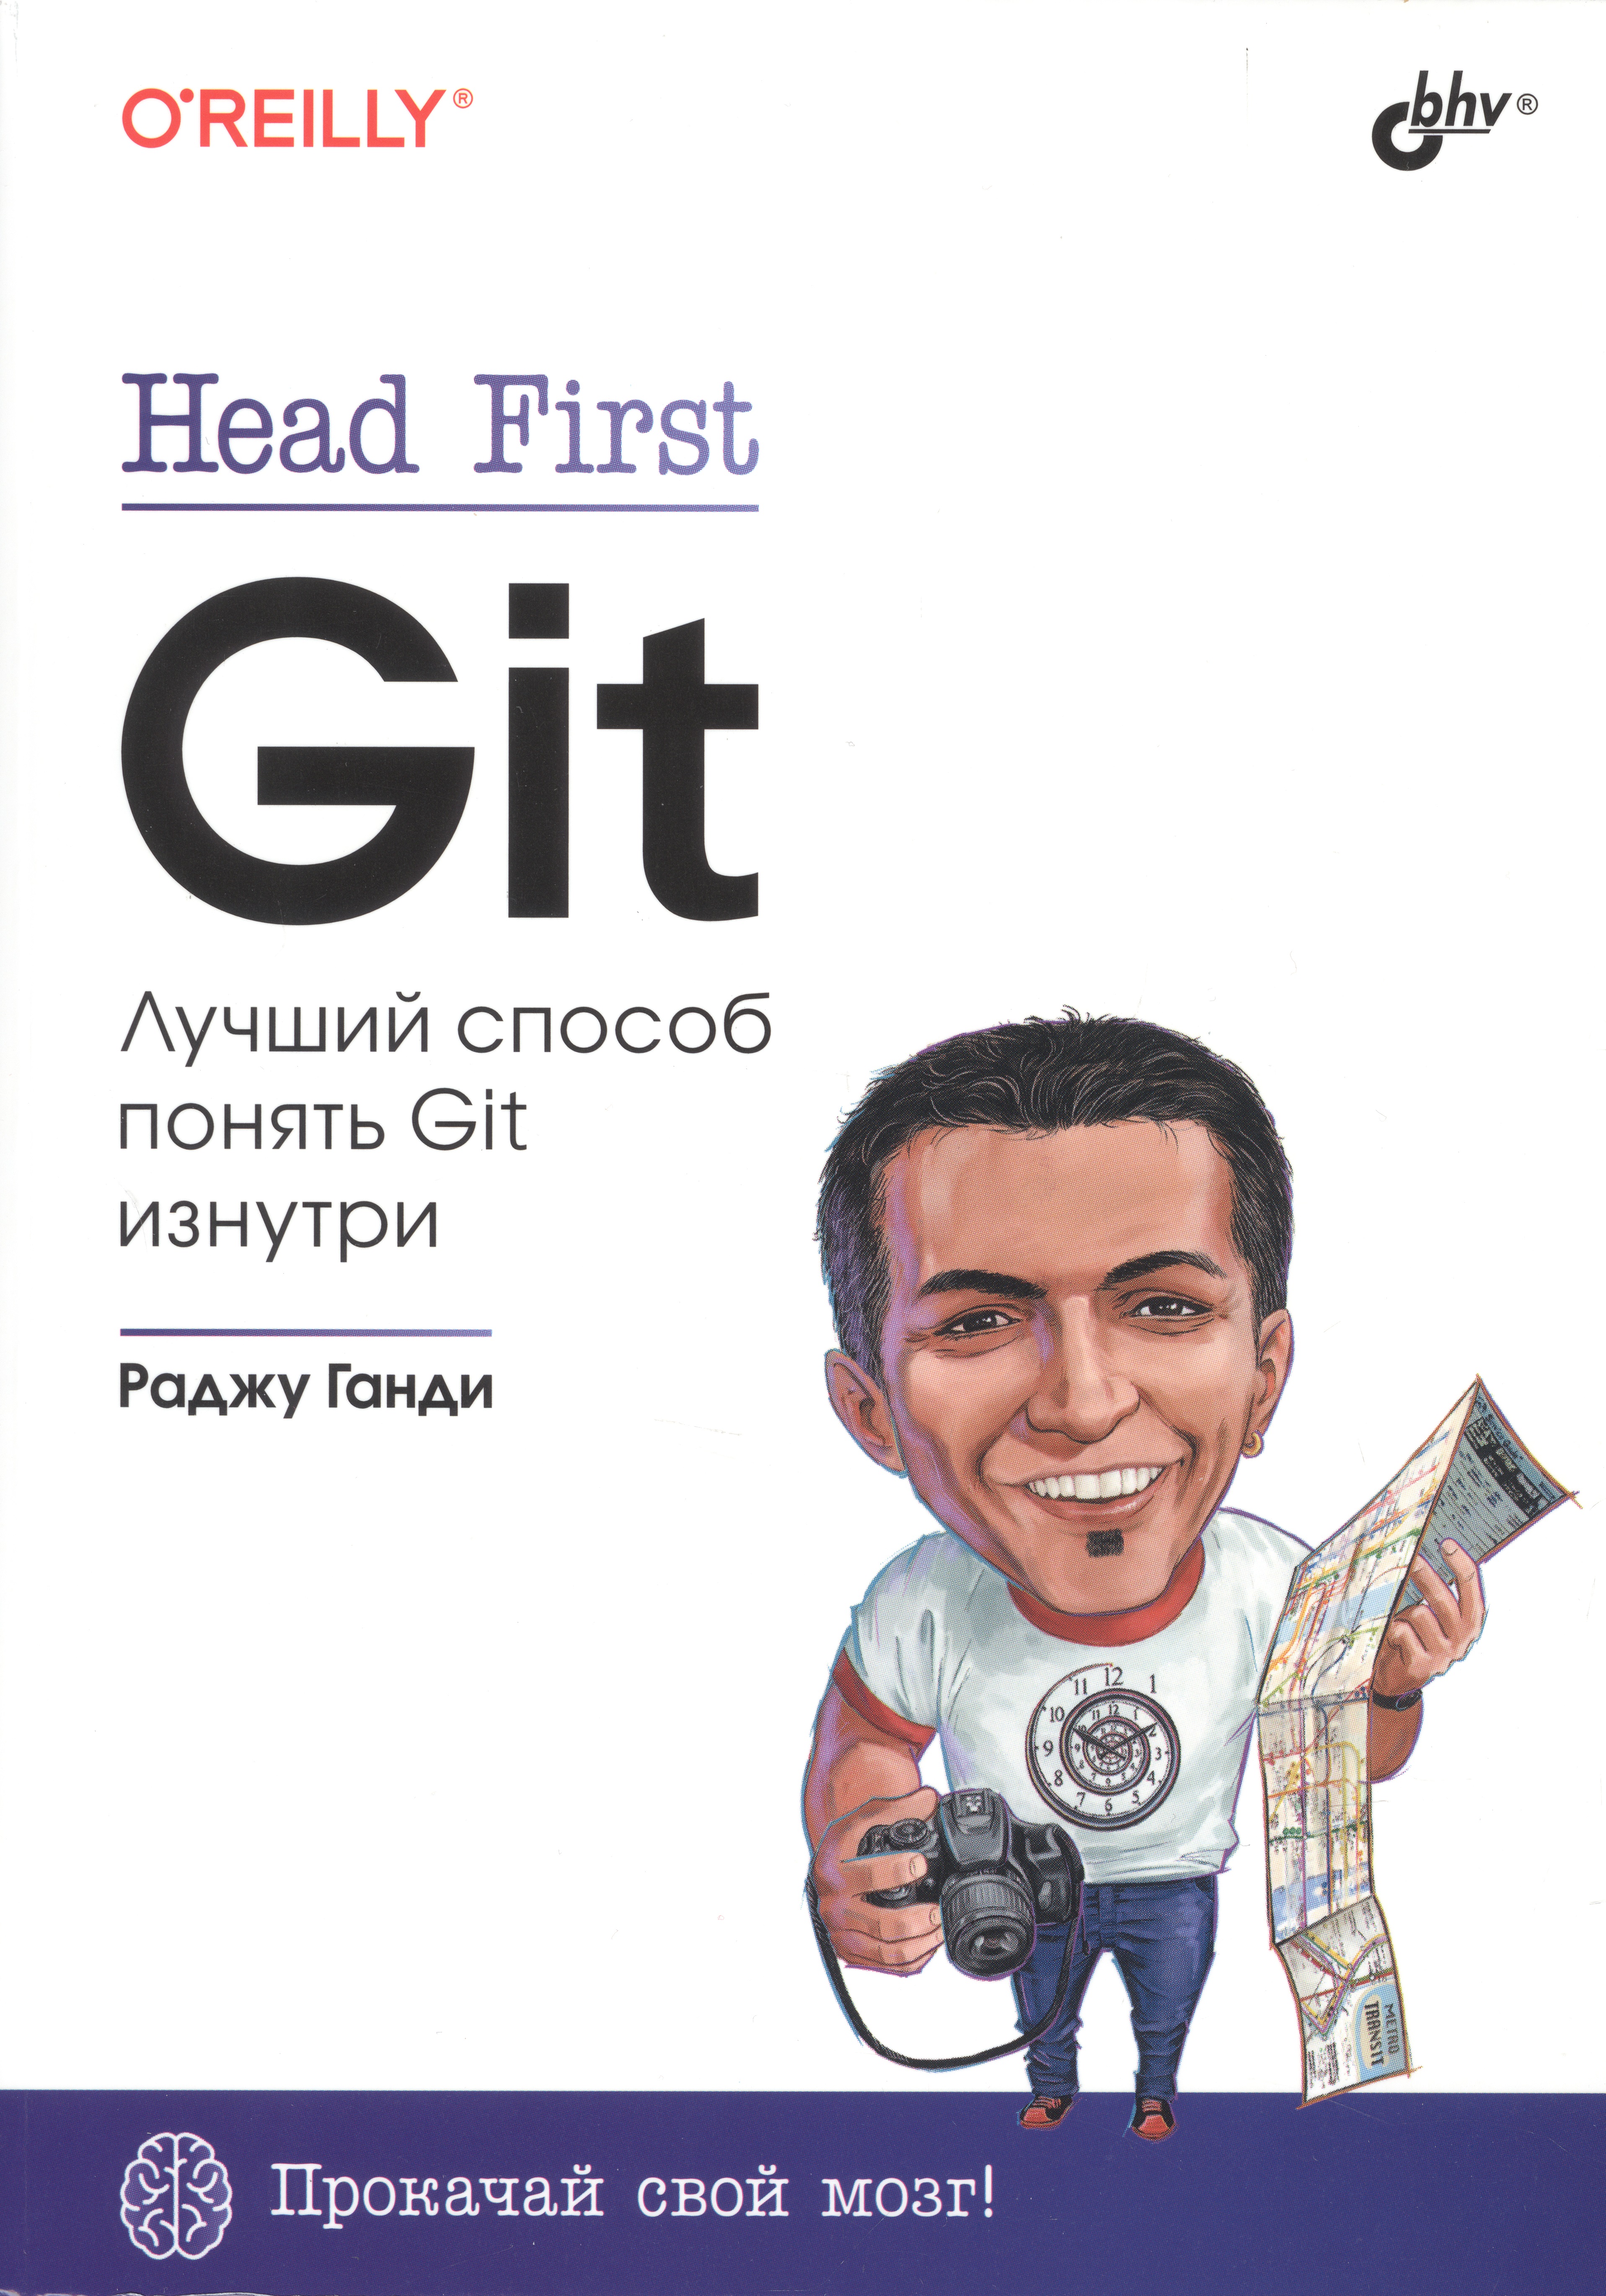 Head First. Git